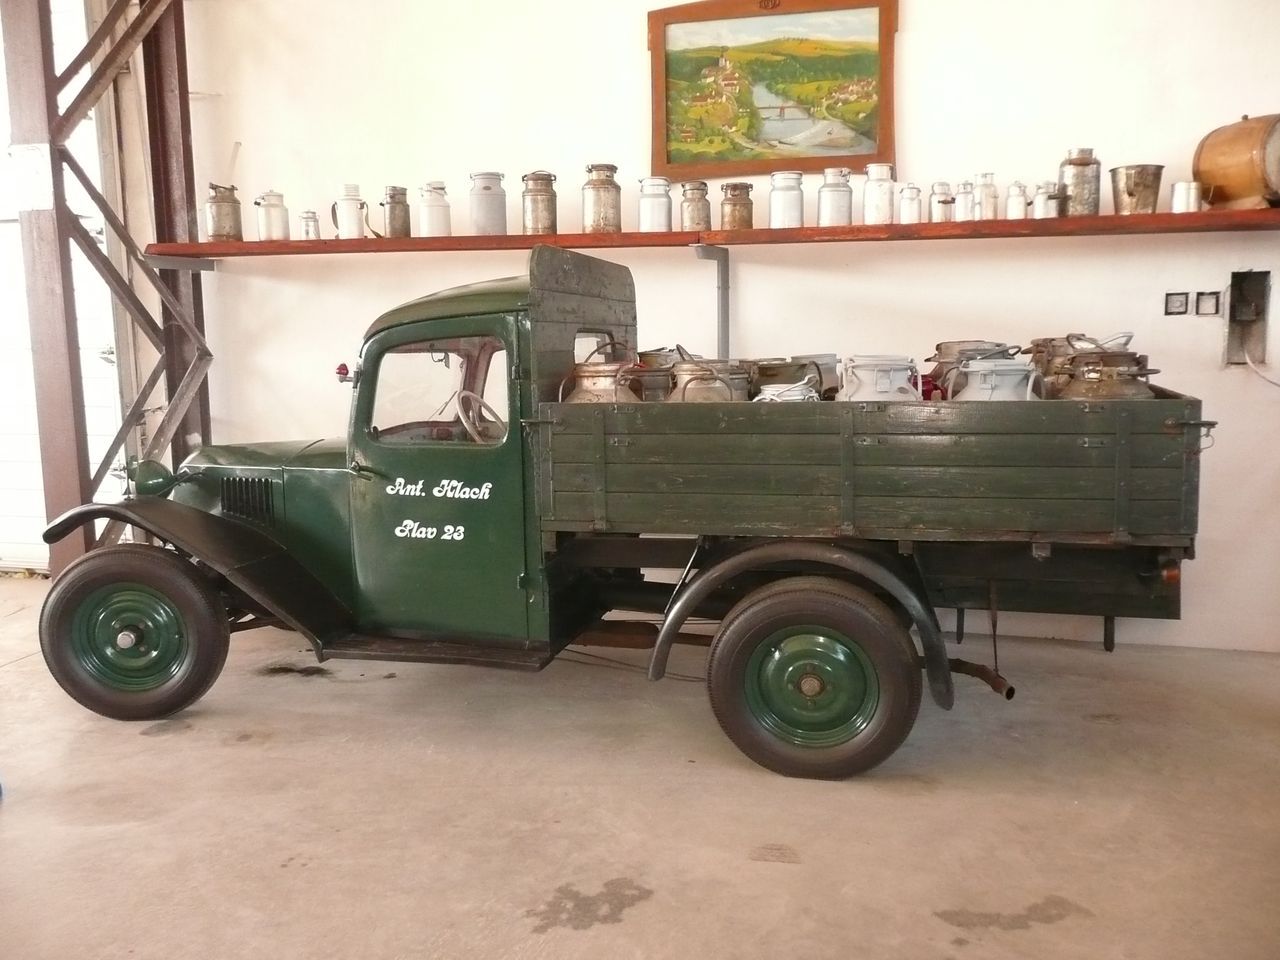 Muzeum uitkovch vozidel Trhov Sviny